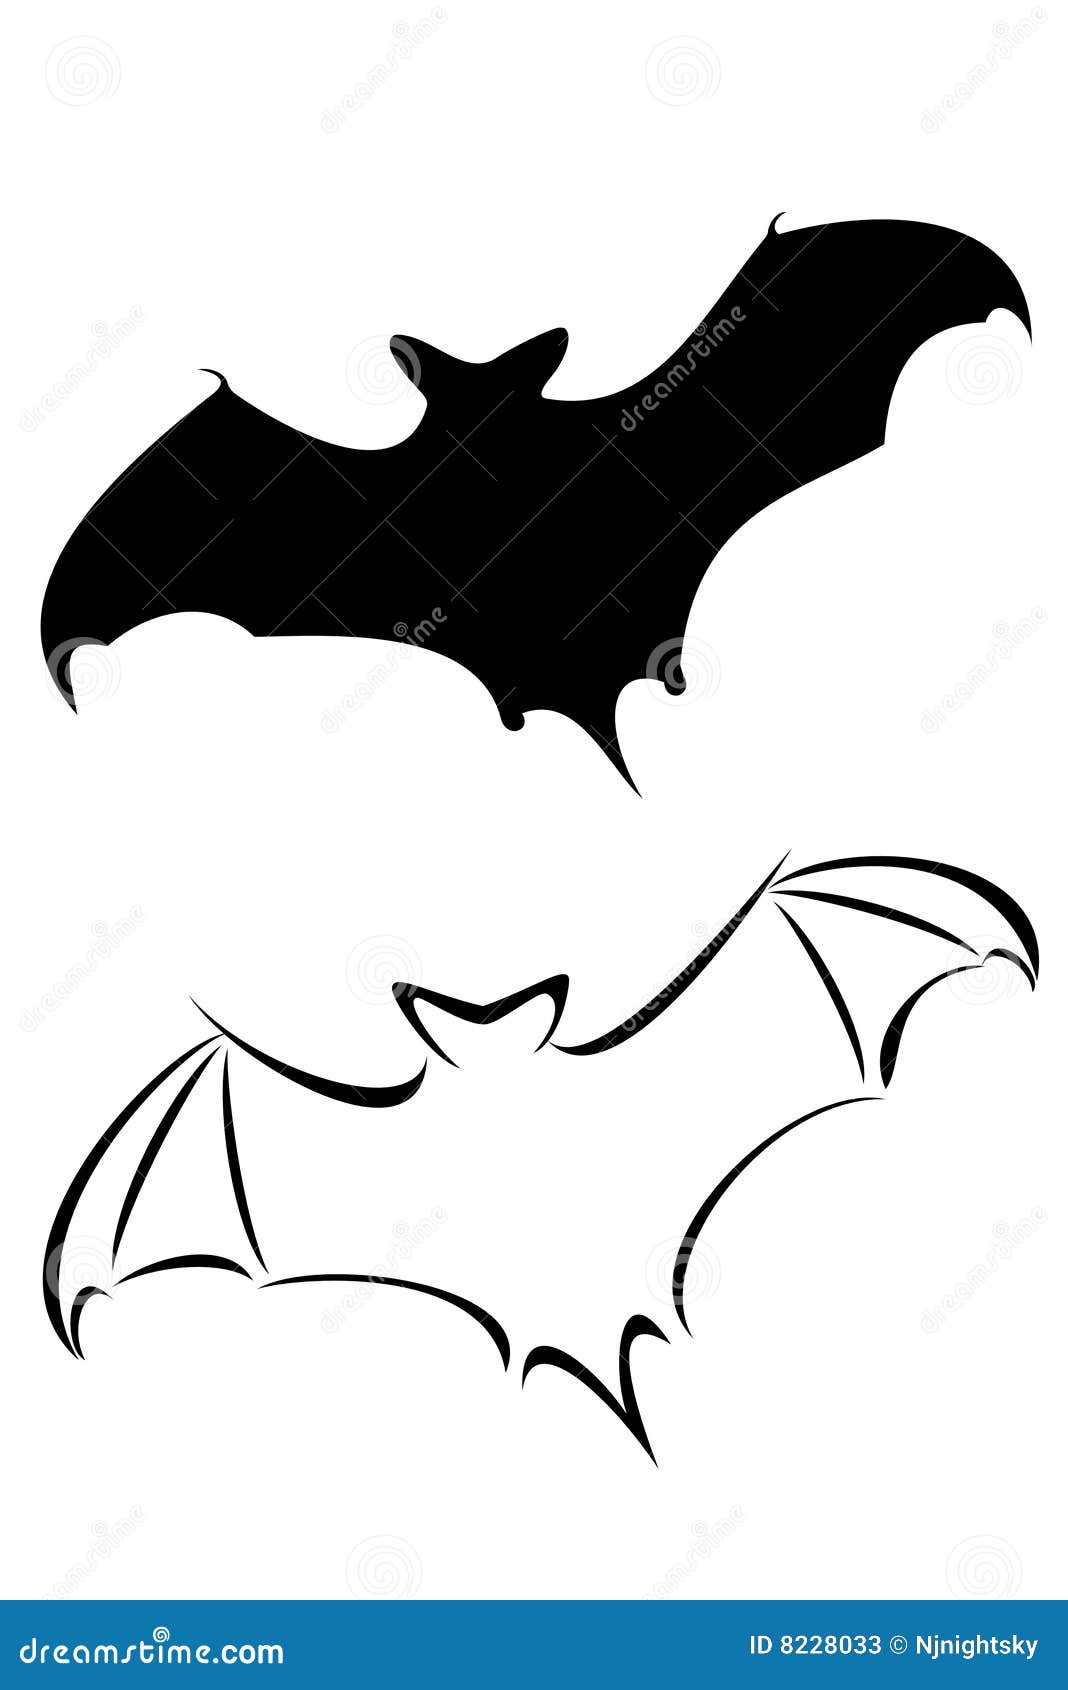 Bat tattoo 😈 #bat#goth#art#tattoo | TikTok